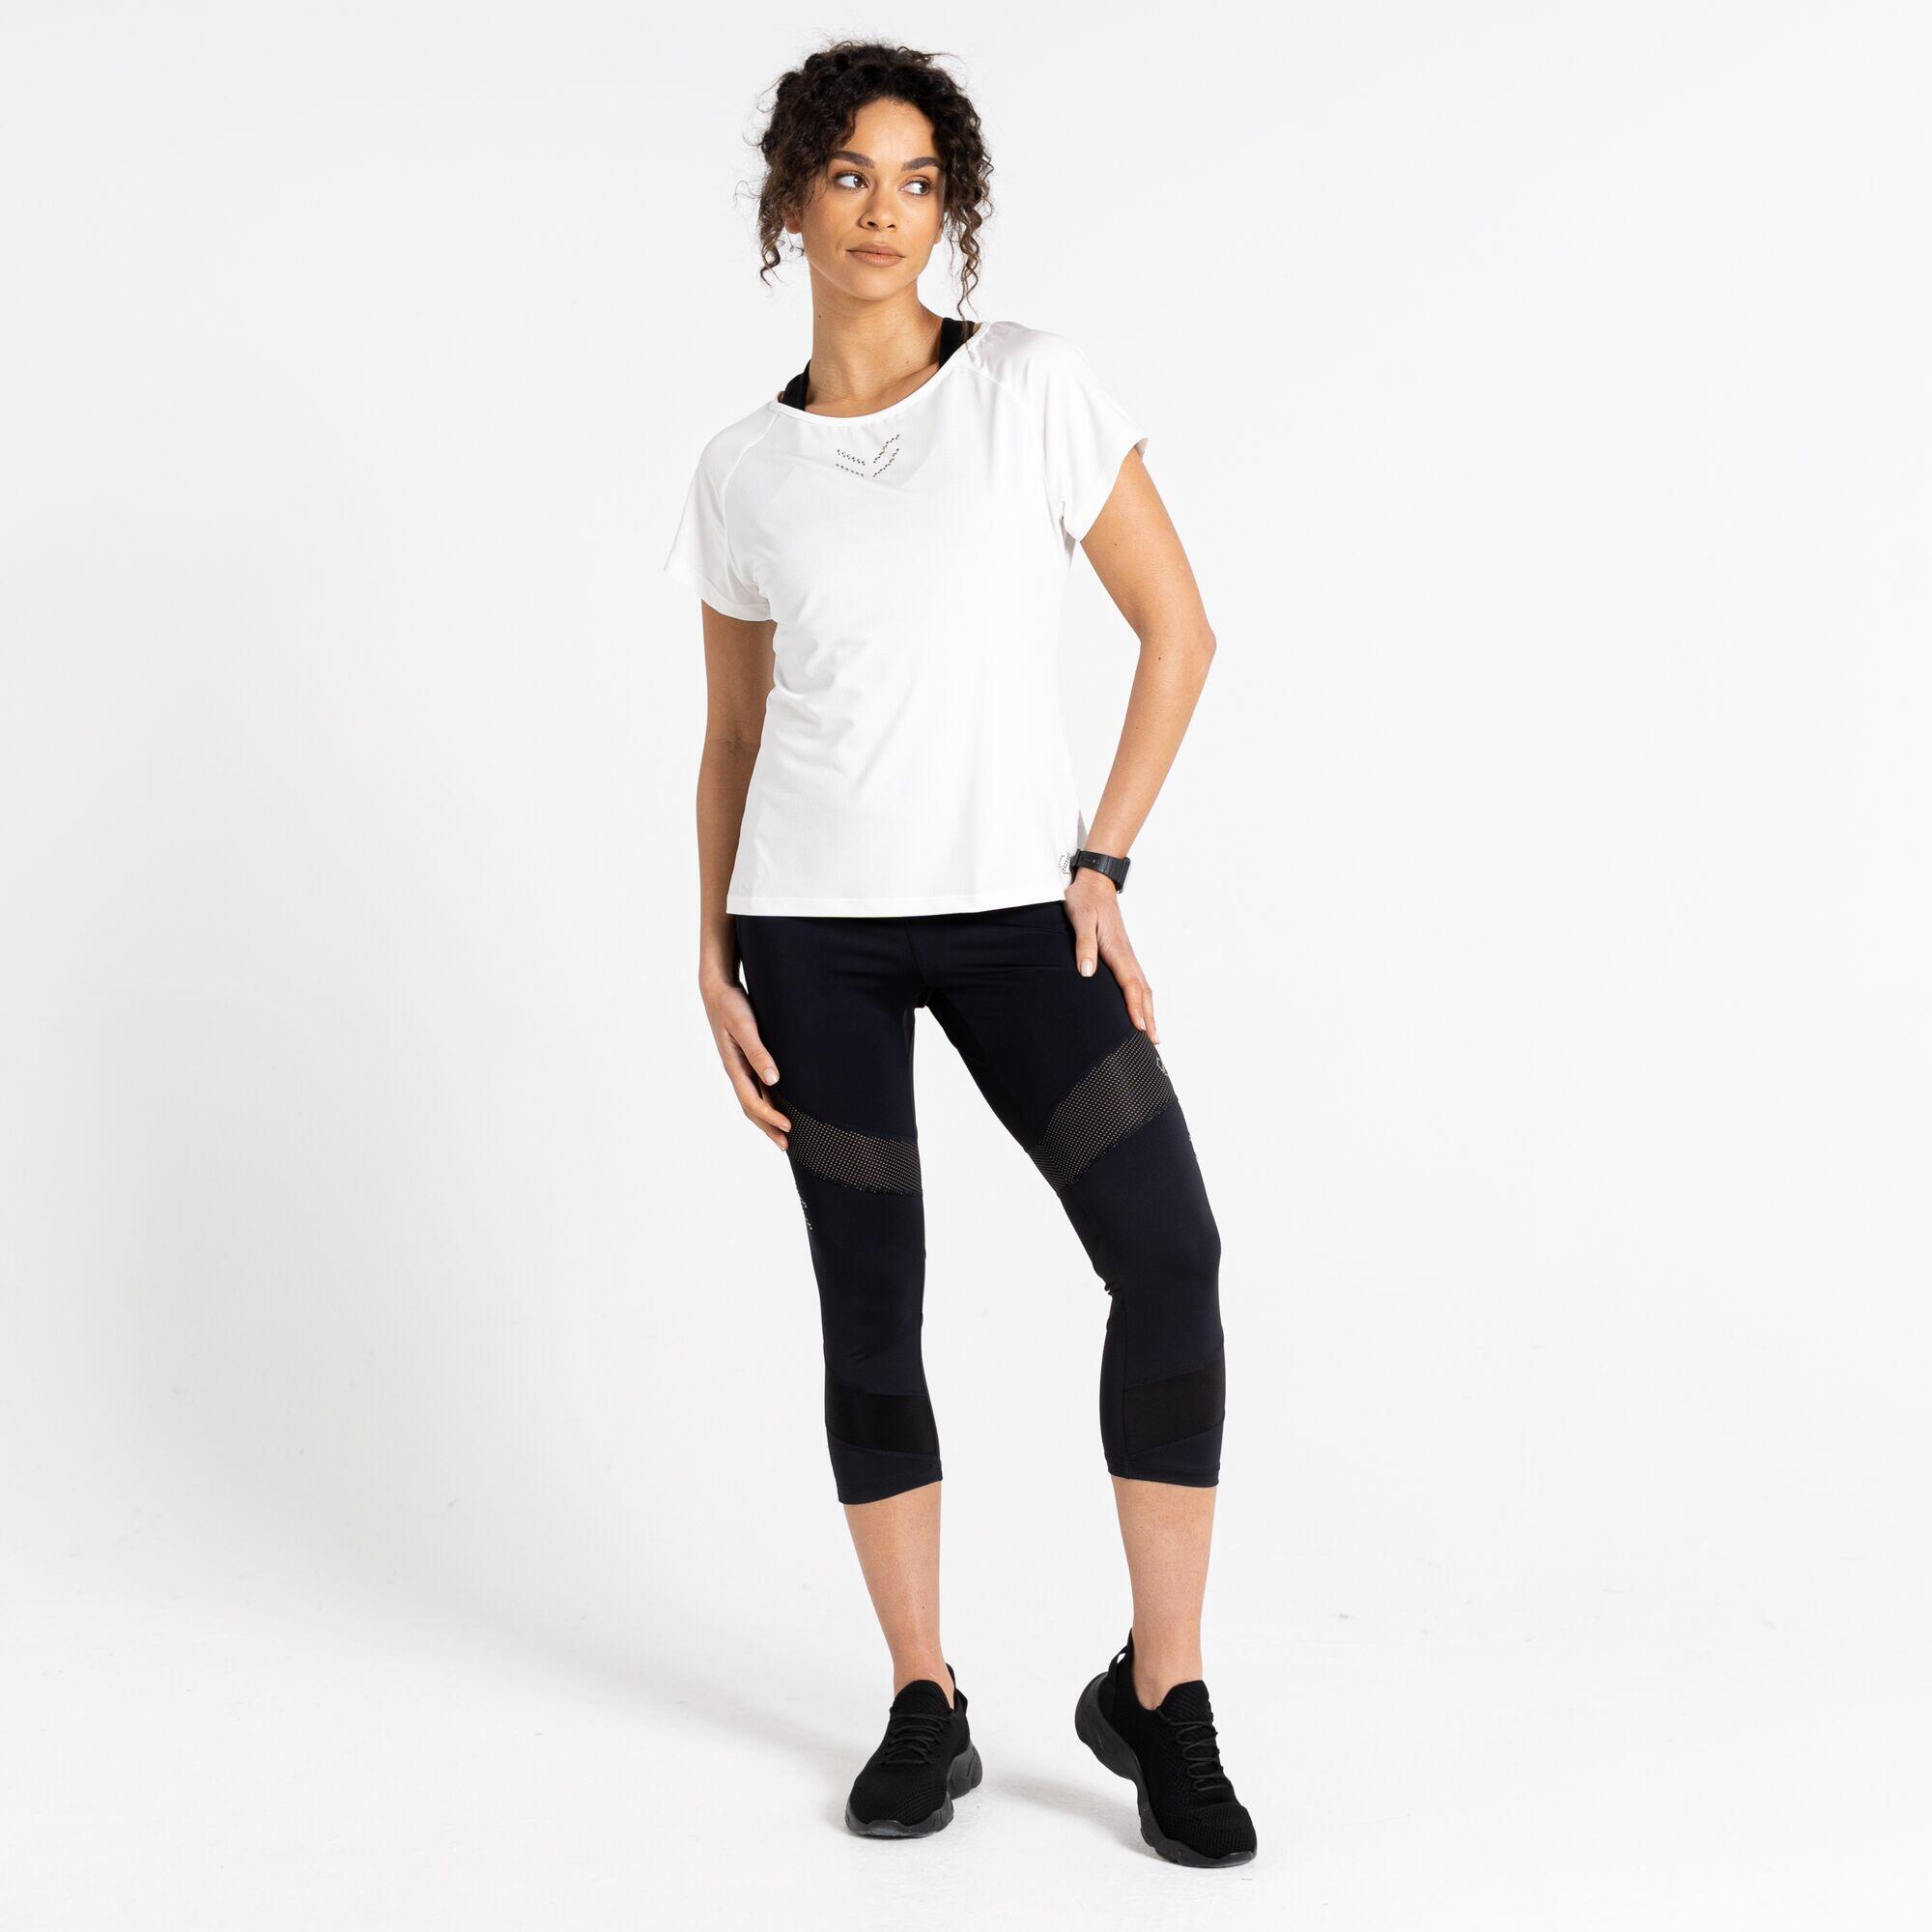 Cyrstallize Women's Fitness Short Sleeve T-Shirt - White 2/5